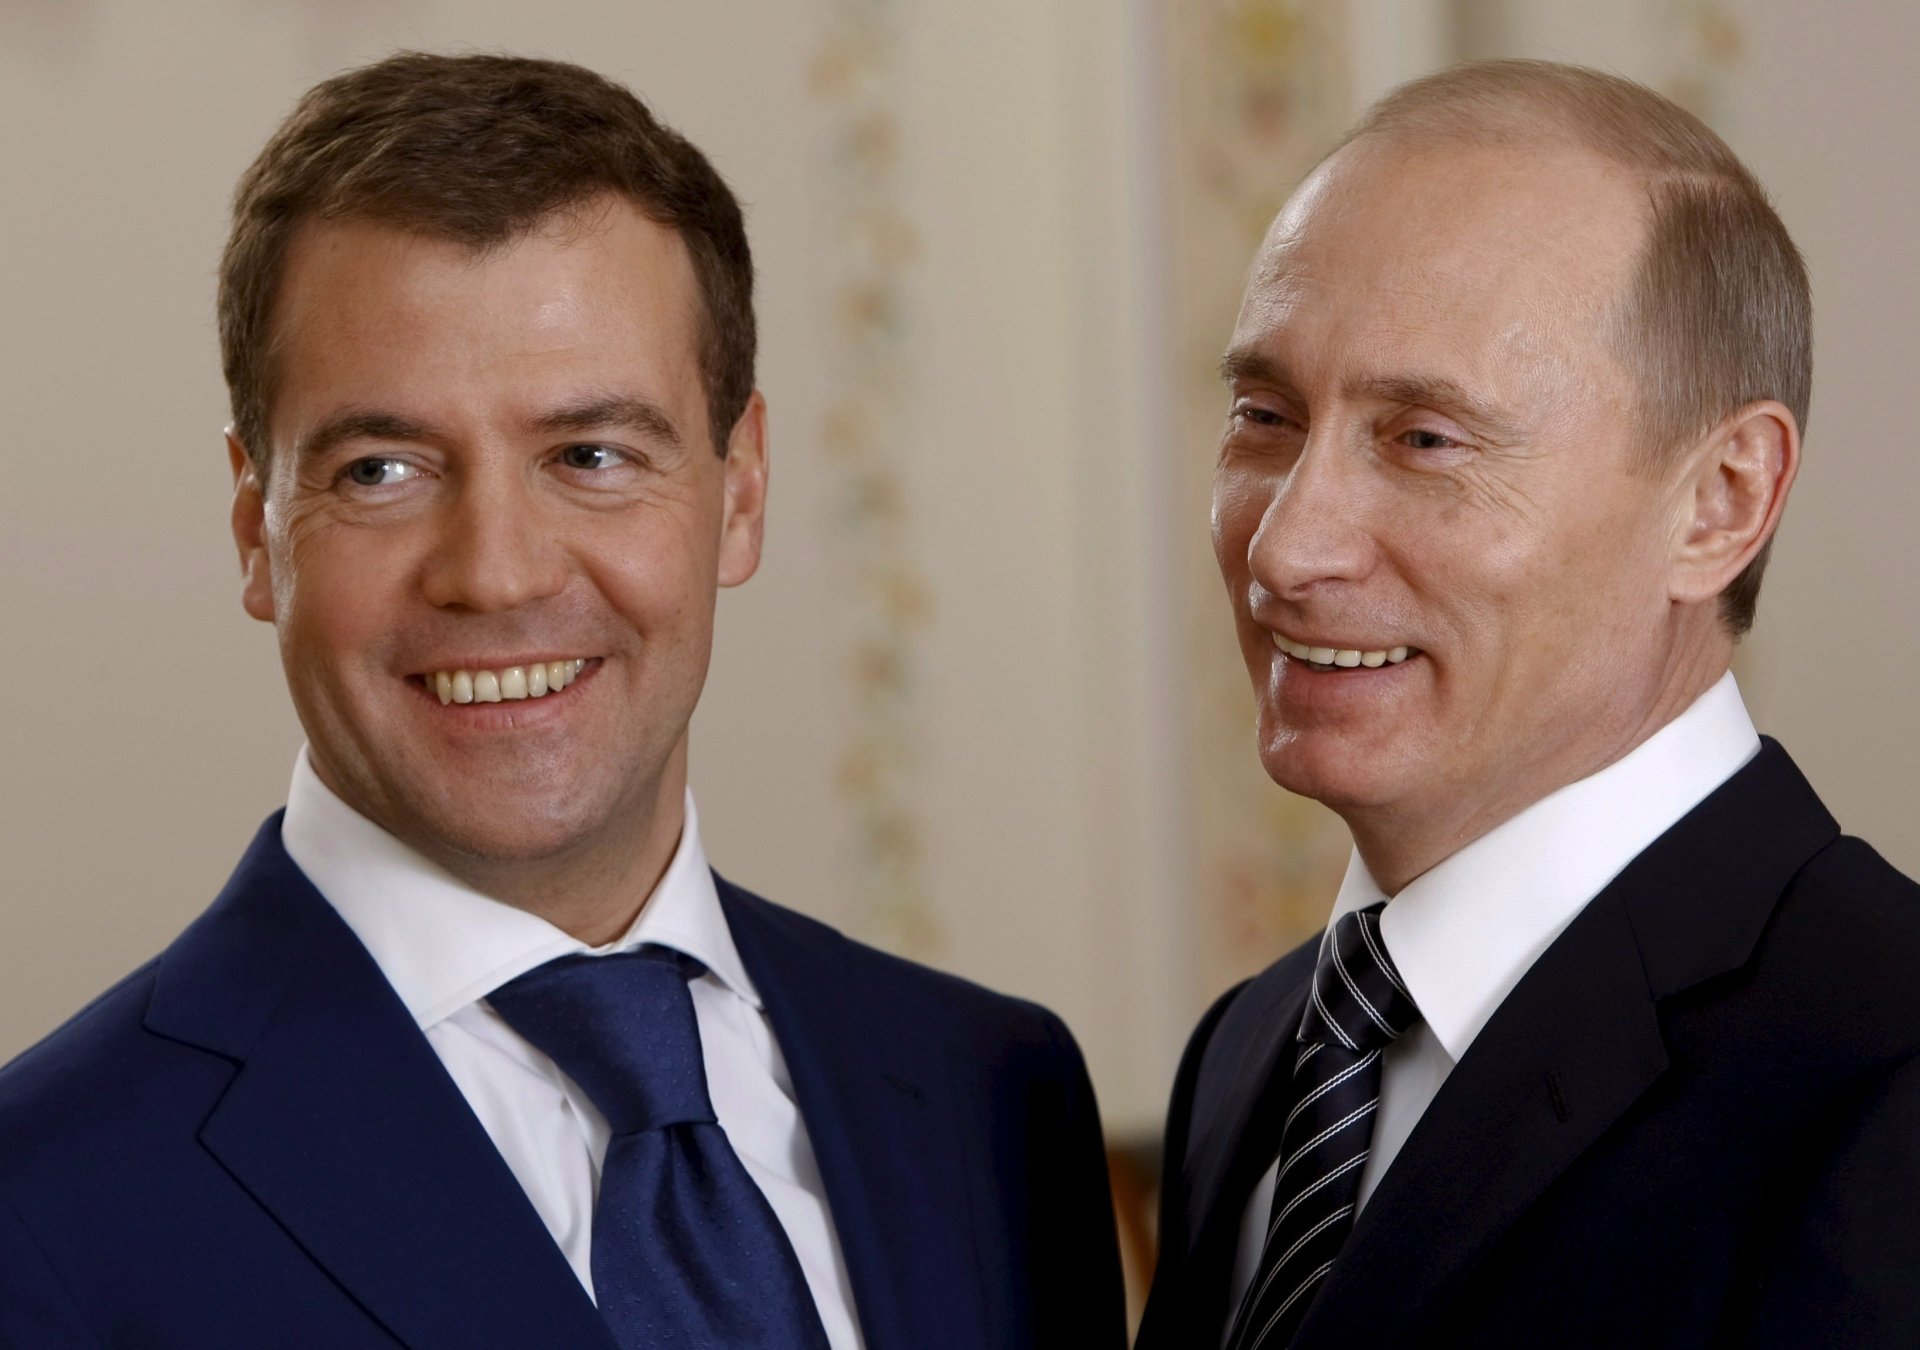 политические деятели тандем президент премьер министр портрет взгляд политика дуэт улыбка россия глаза лицо медведев путин